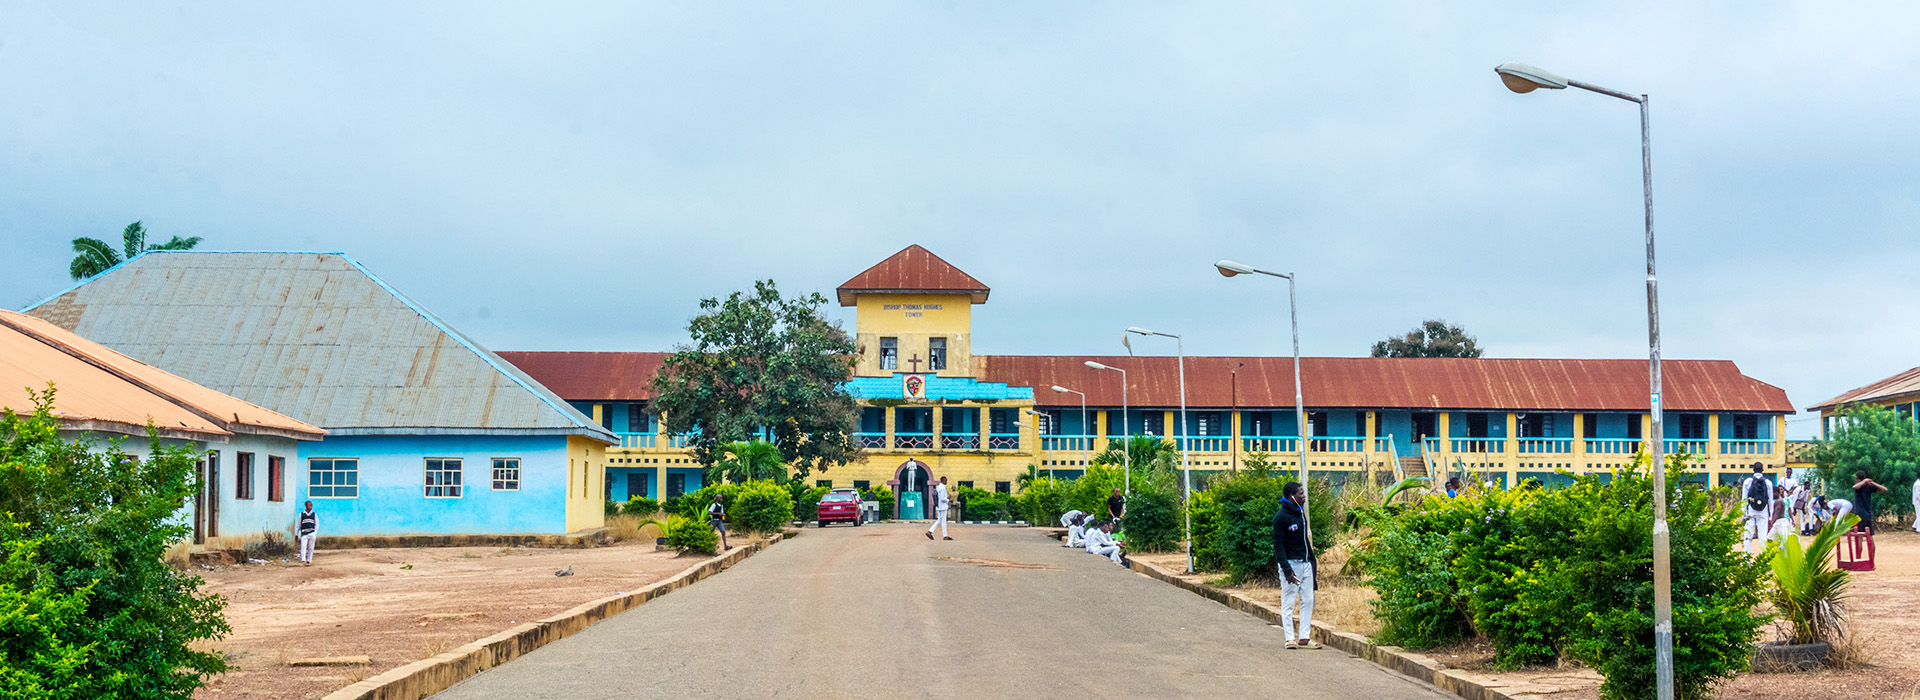 Apian Way - Aquinas College Akure, Ondo State